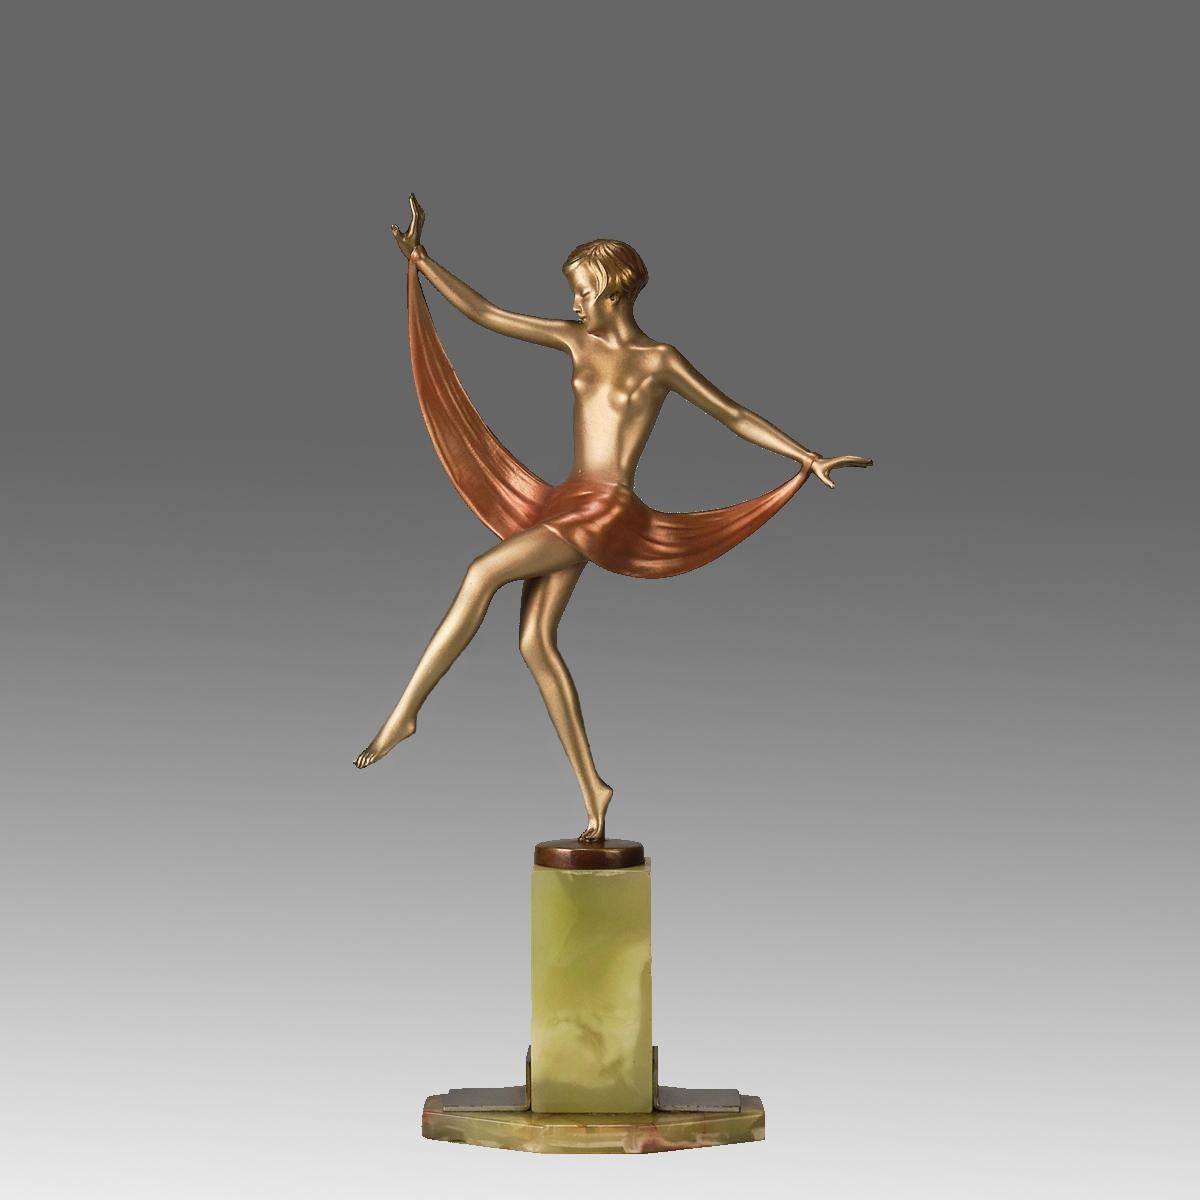 Impressionnante figurine en bronze peinte à froid, dorée et émaillée du début du 20e siècle, représentant une jeune beauté énergique dans une pose de danse équilibrée, avec une écharpe drapée autour de son torse. Le bronze présente d'excellentes